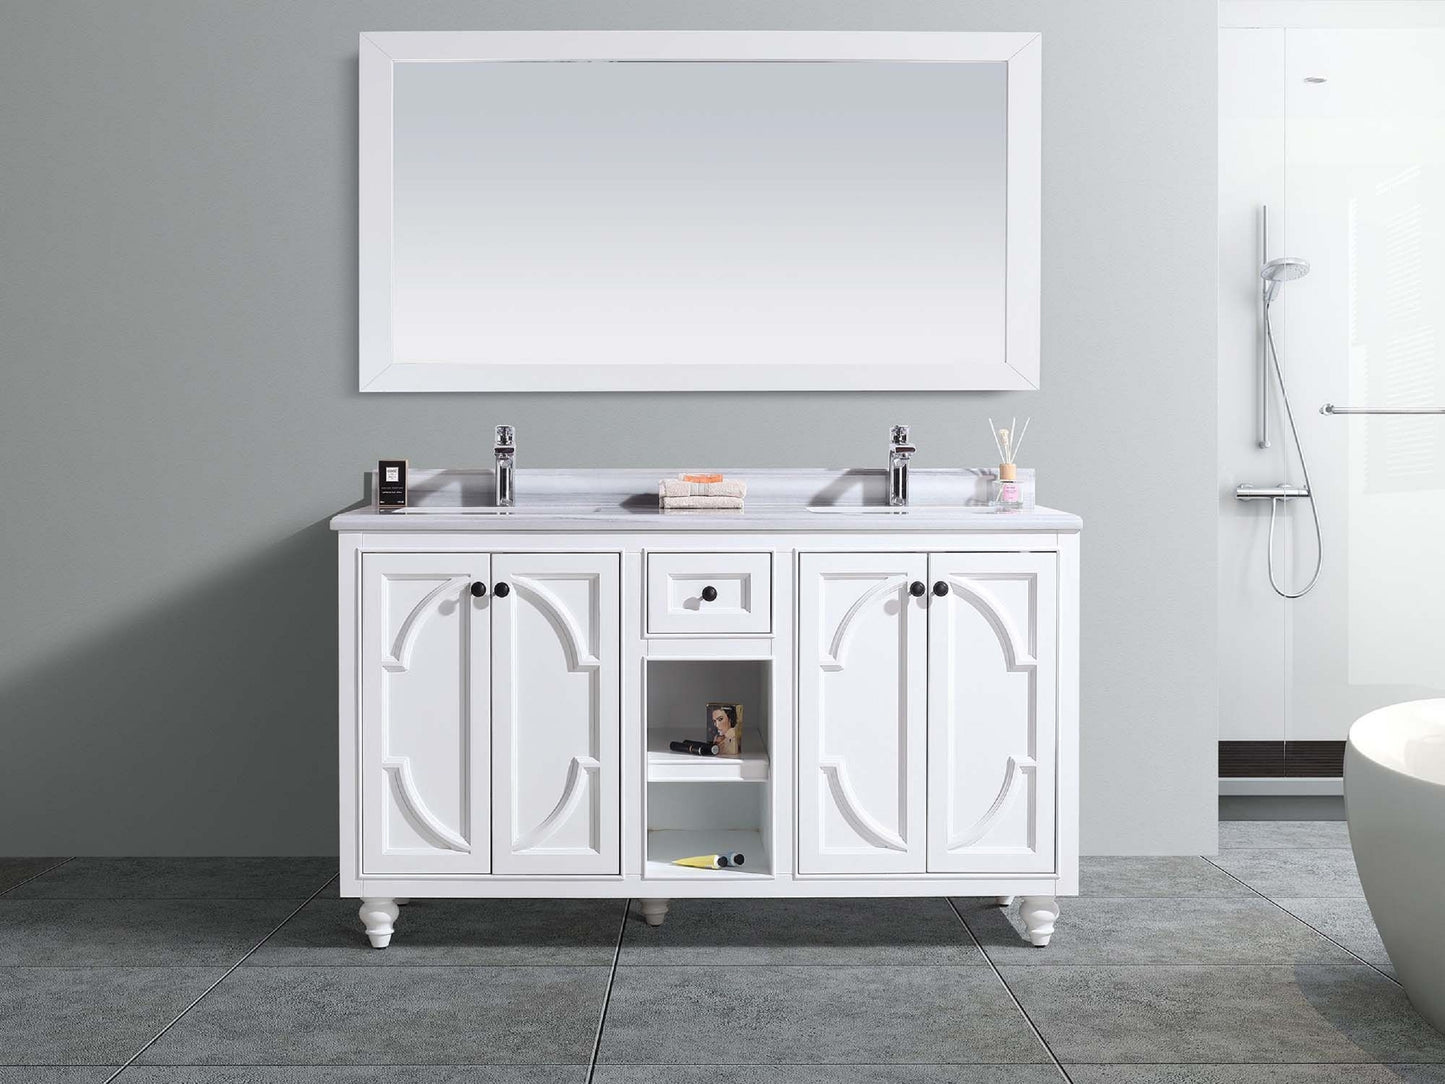 Odyssey - 60 - Cabinet with Counter - Luxe Bathroom Vanities Luxury Bathroom Fixtures Bathroom Furniture